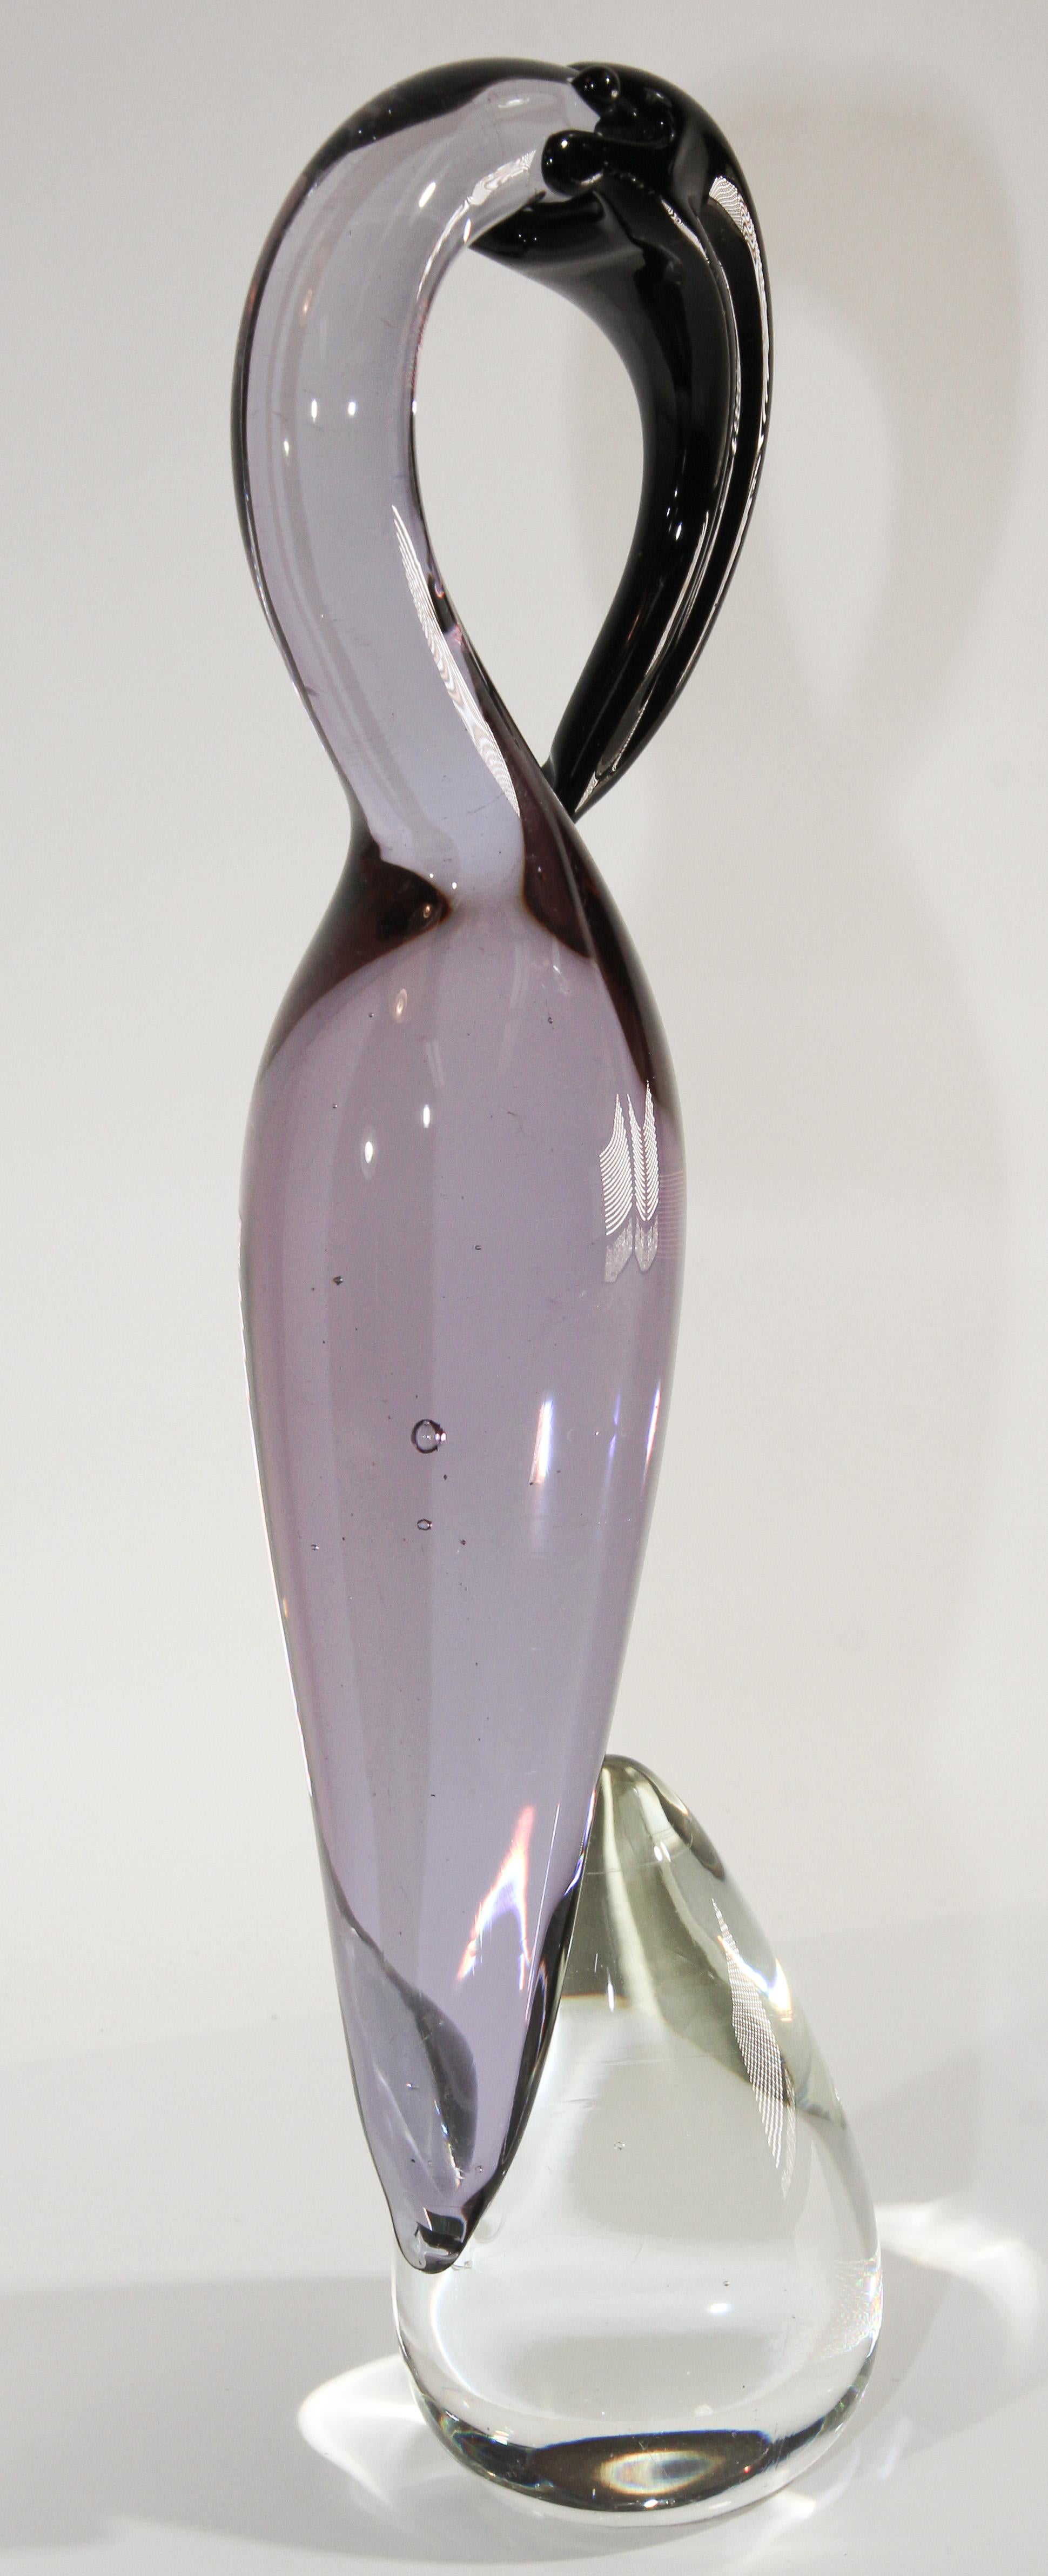 Collection Vintage de sculptures en verre soufflé à la bouche de Murano représentant une grue en verre clair et violet.
Magnifique figurine italienne en verre d'art soufflé à la main, de style Modern-Decor, décorée en rose clair, violet et noir.
Cet